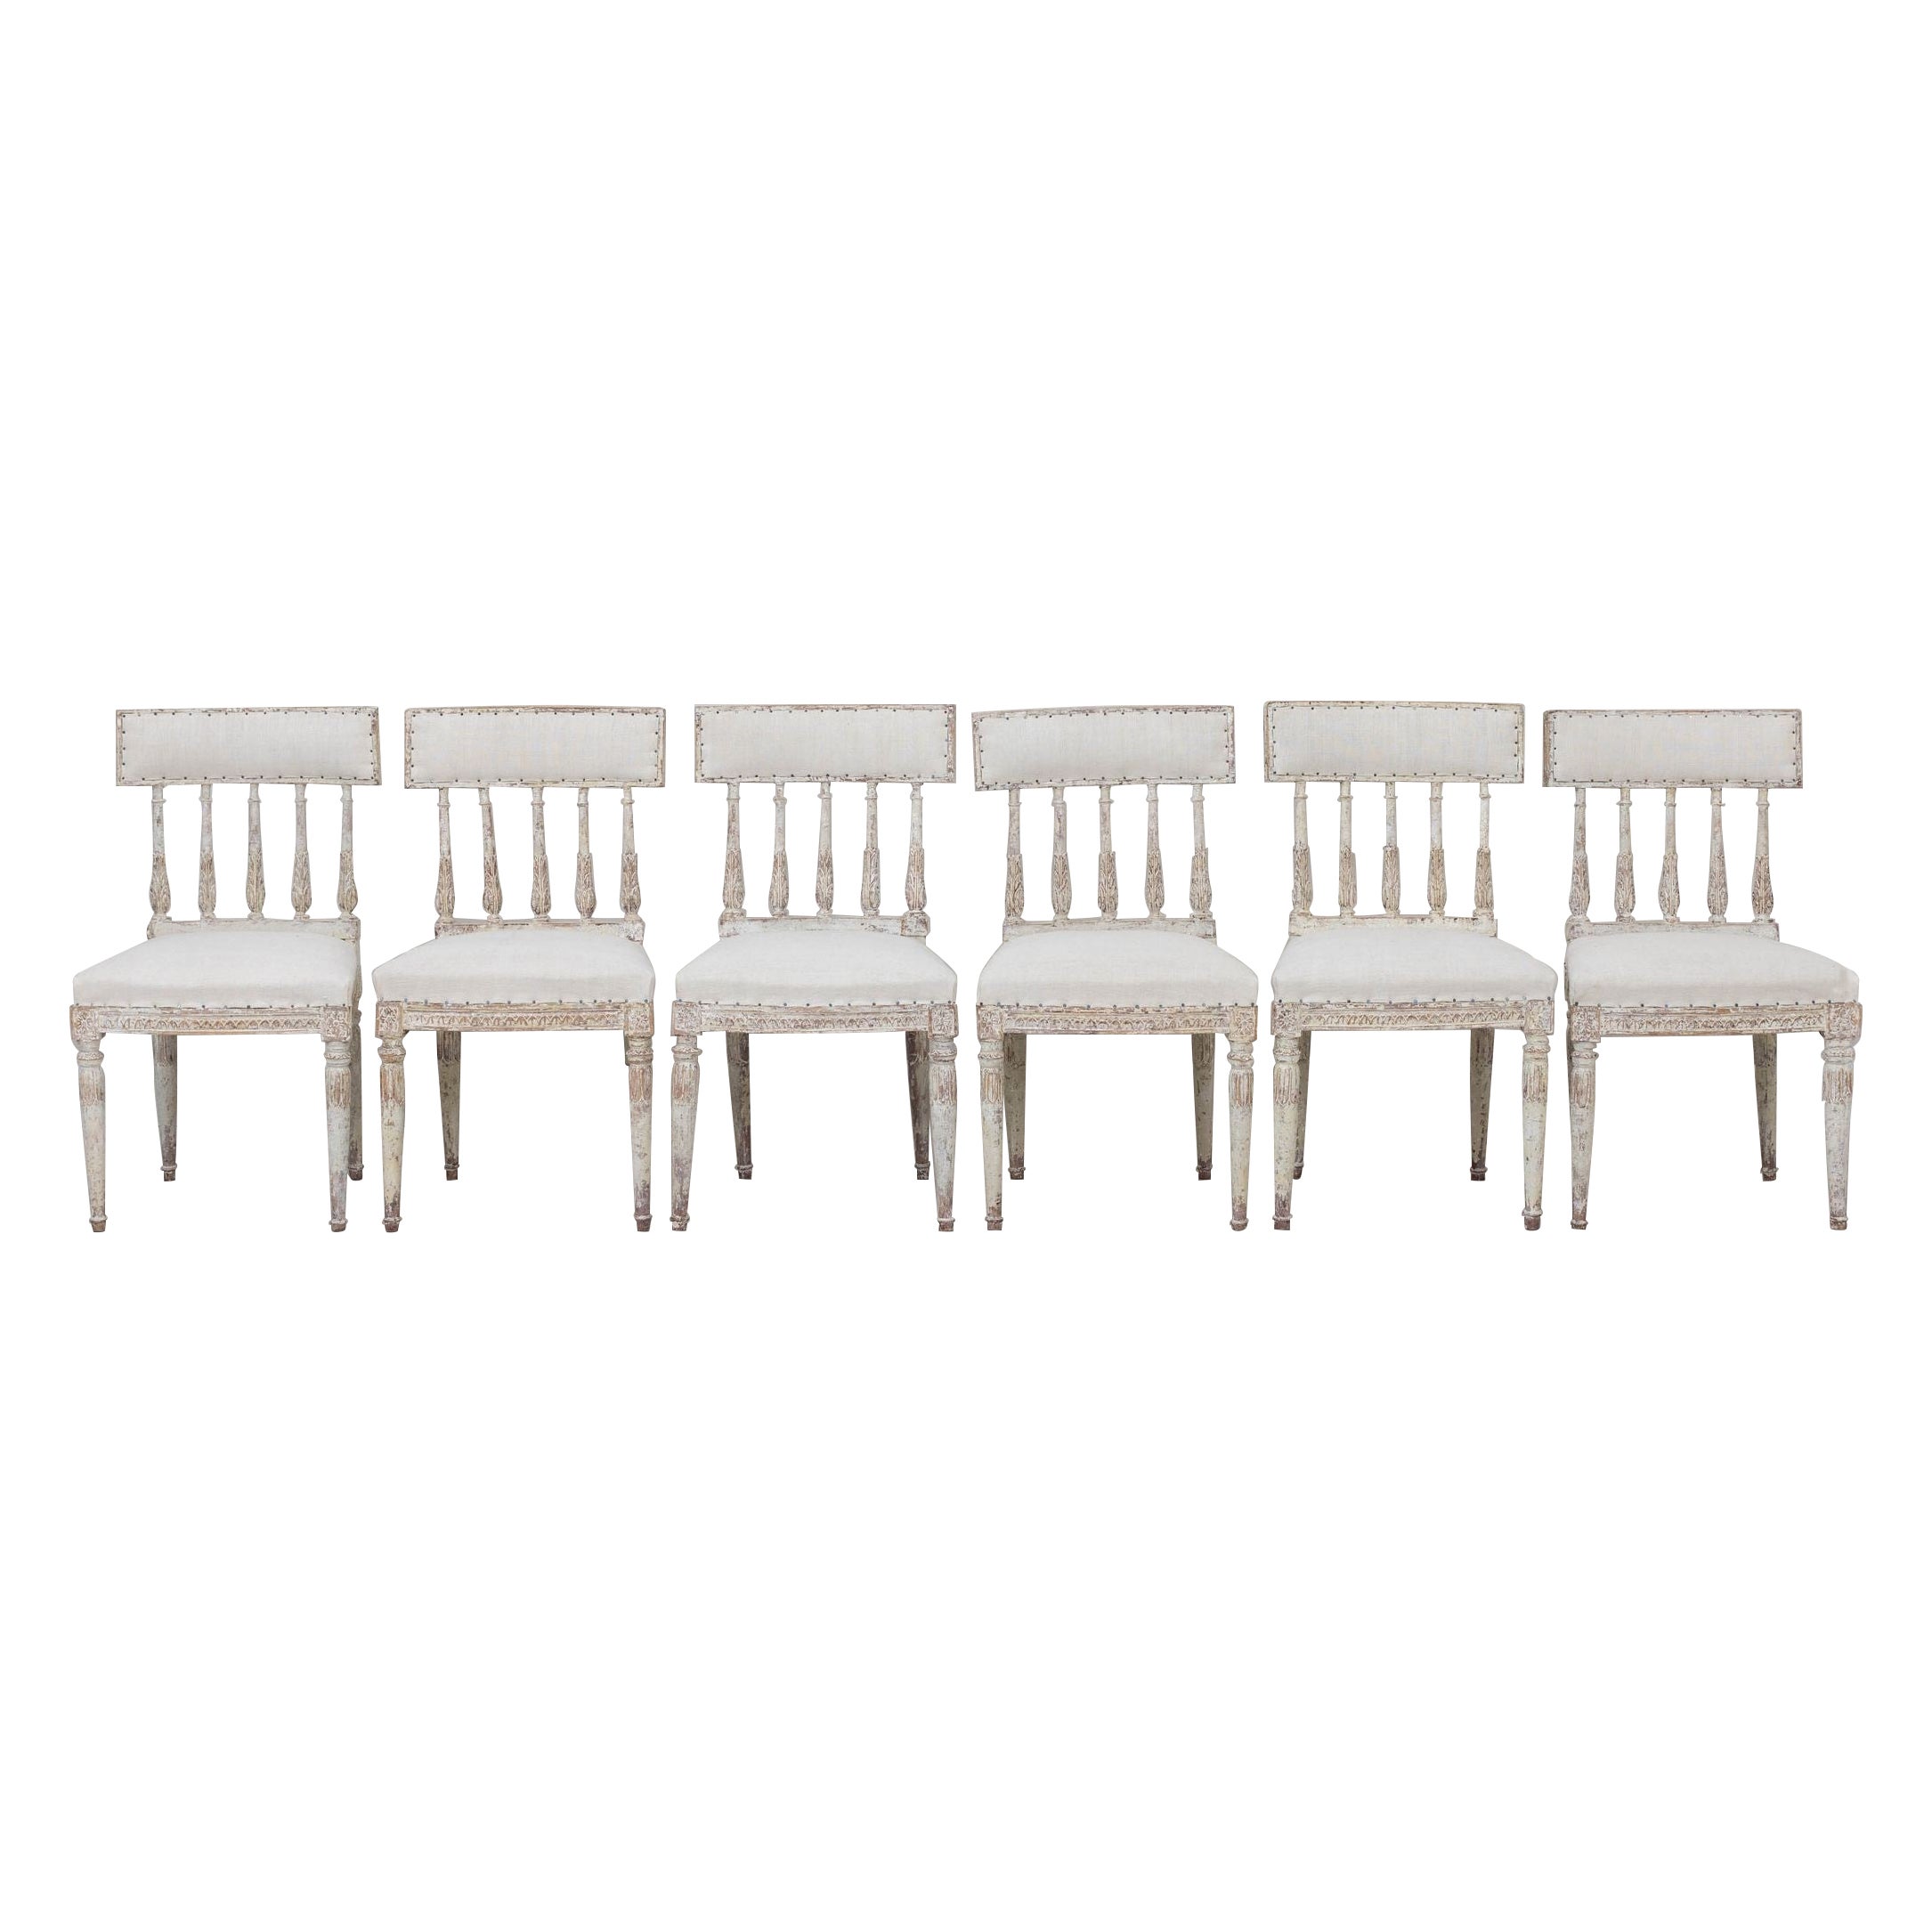 Ein Satz von sechs schwedischen Stühlen aus der Gustavianischen Periode in Originalfarbe, neu gepolstert mit antikem Leinen. Diese schönen Stühle haben geschwungene Rückenlehnen, die von antiken römischen 